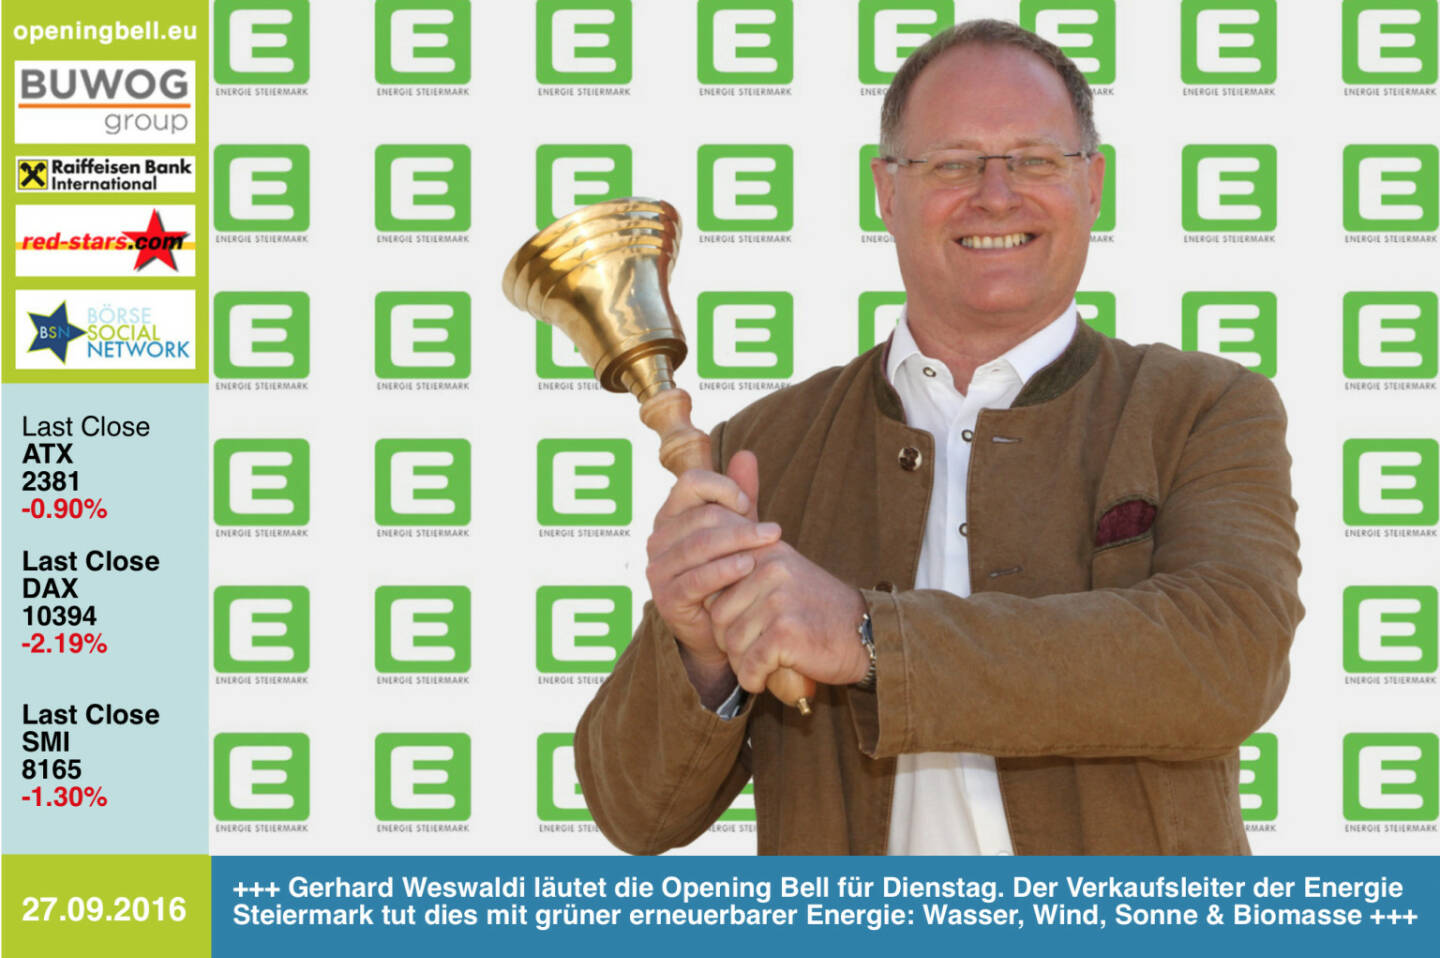 #openingbell am 27.9.: Gerhard Weswaldi läutet die Opening Bell für Dienstag. Der Verkaufsleiter der Energie Steiermark tut dies mit grüner erneuerbarer Energie: Wasser, Wind, Sonne & Biomasse http://e-steiermark.com http://www.openingbell.eu